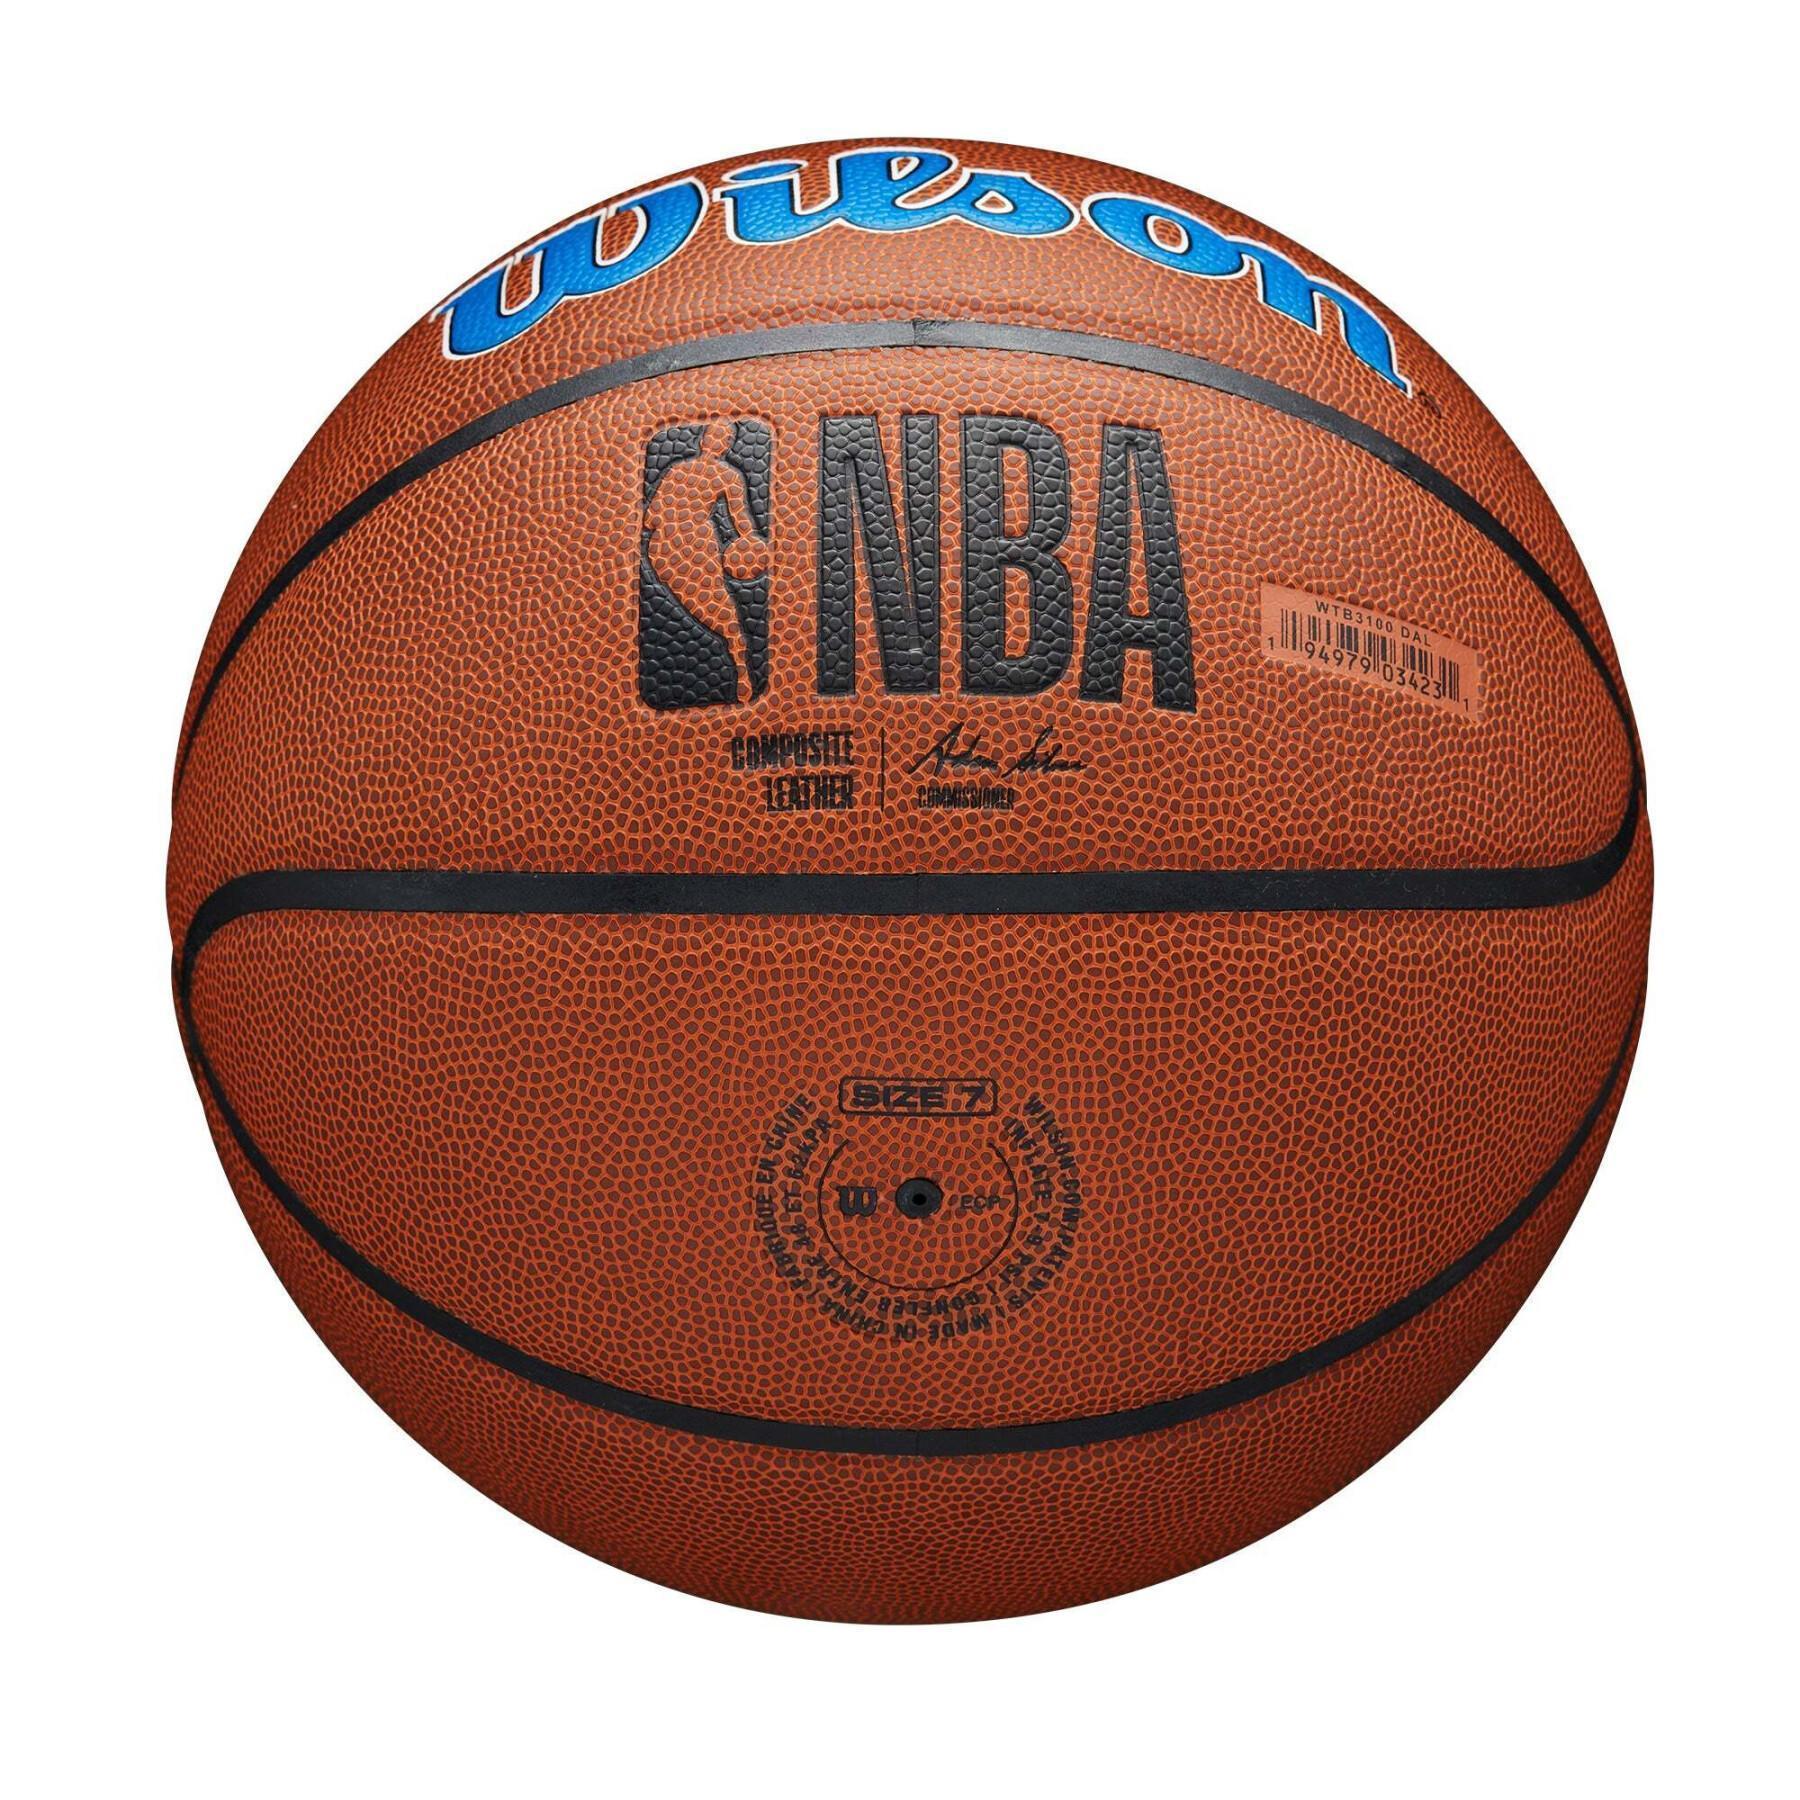 Ballon Dallas Mavericks NBA Team Alliance